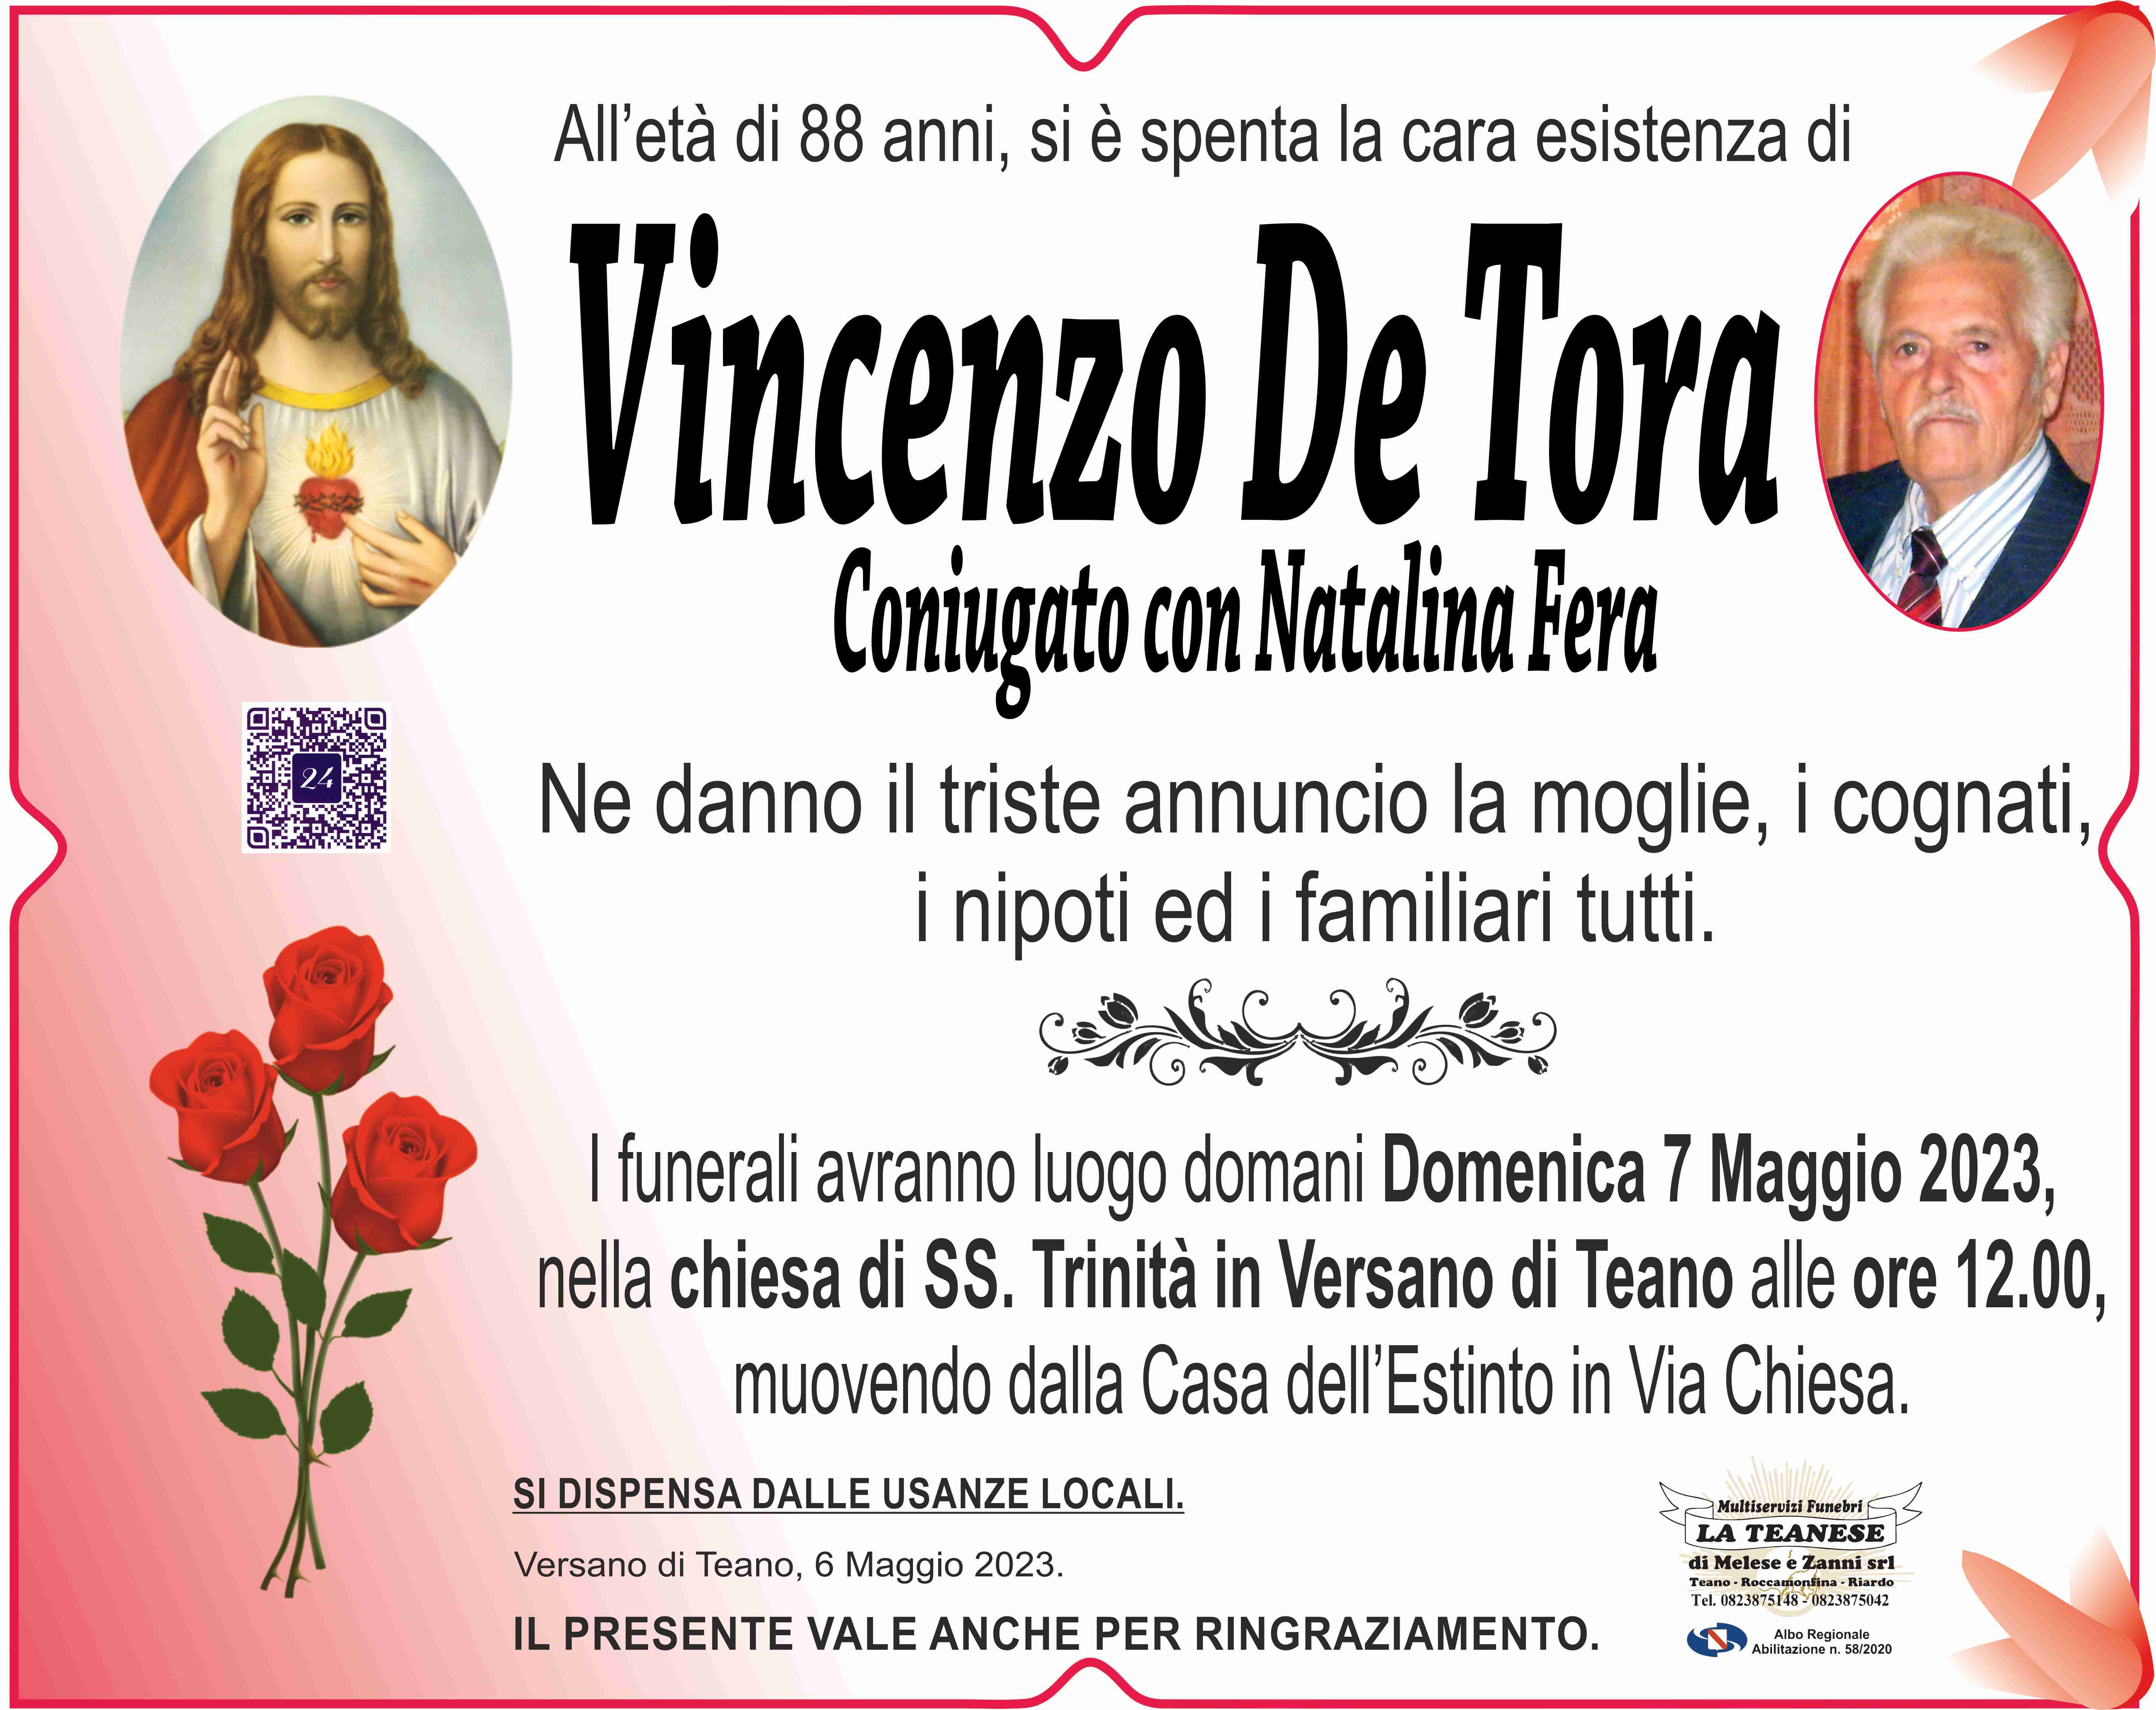 Vincenzo De Tora